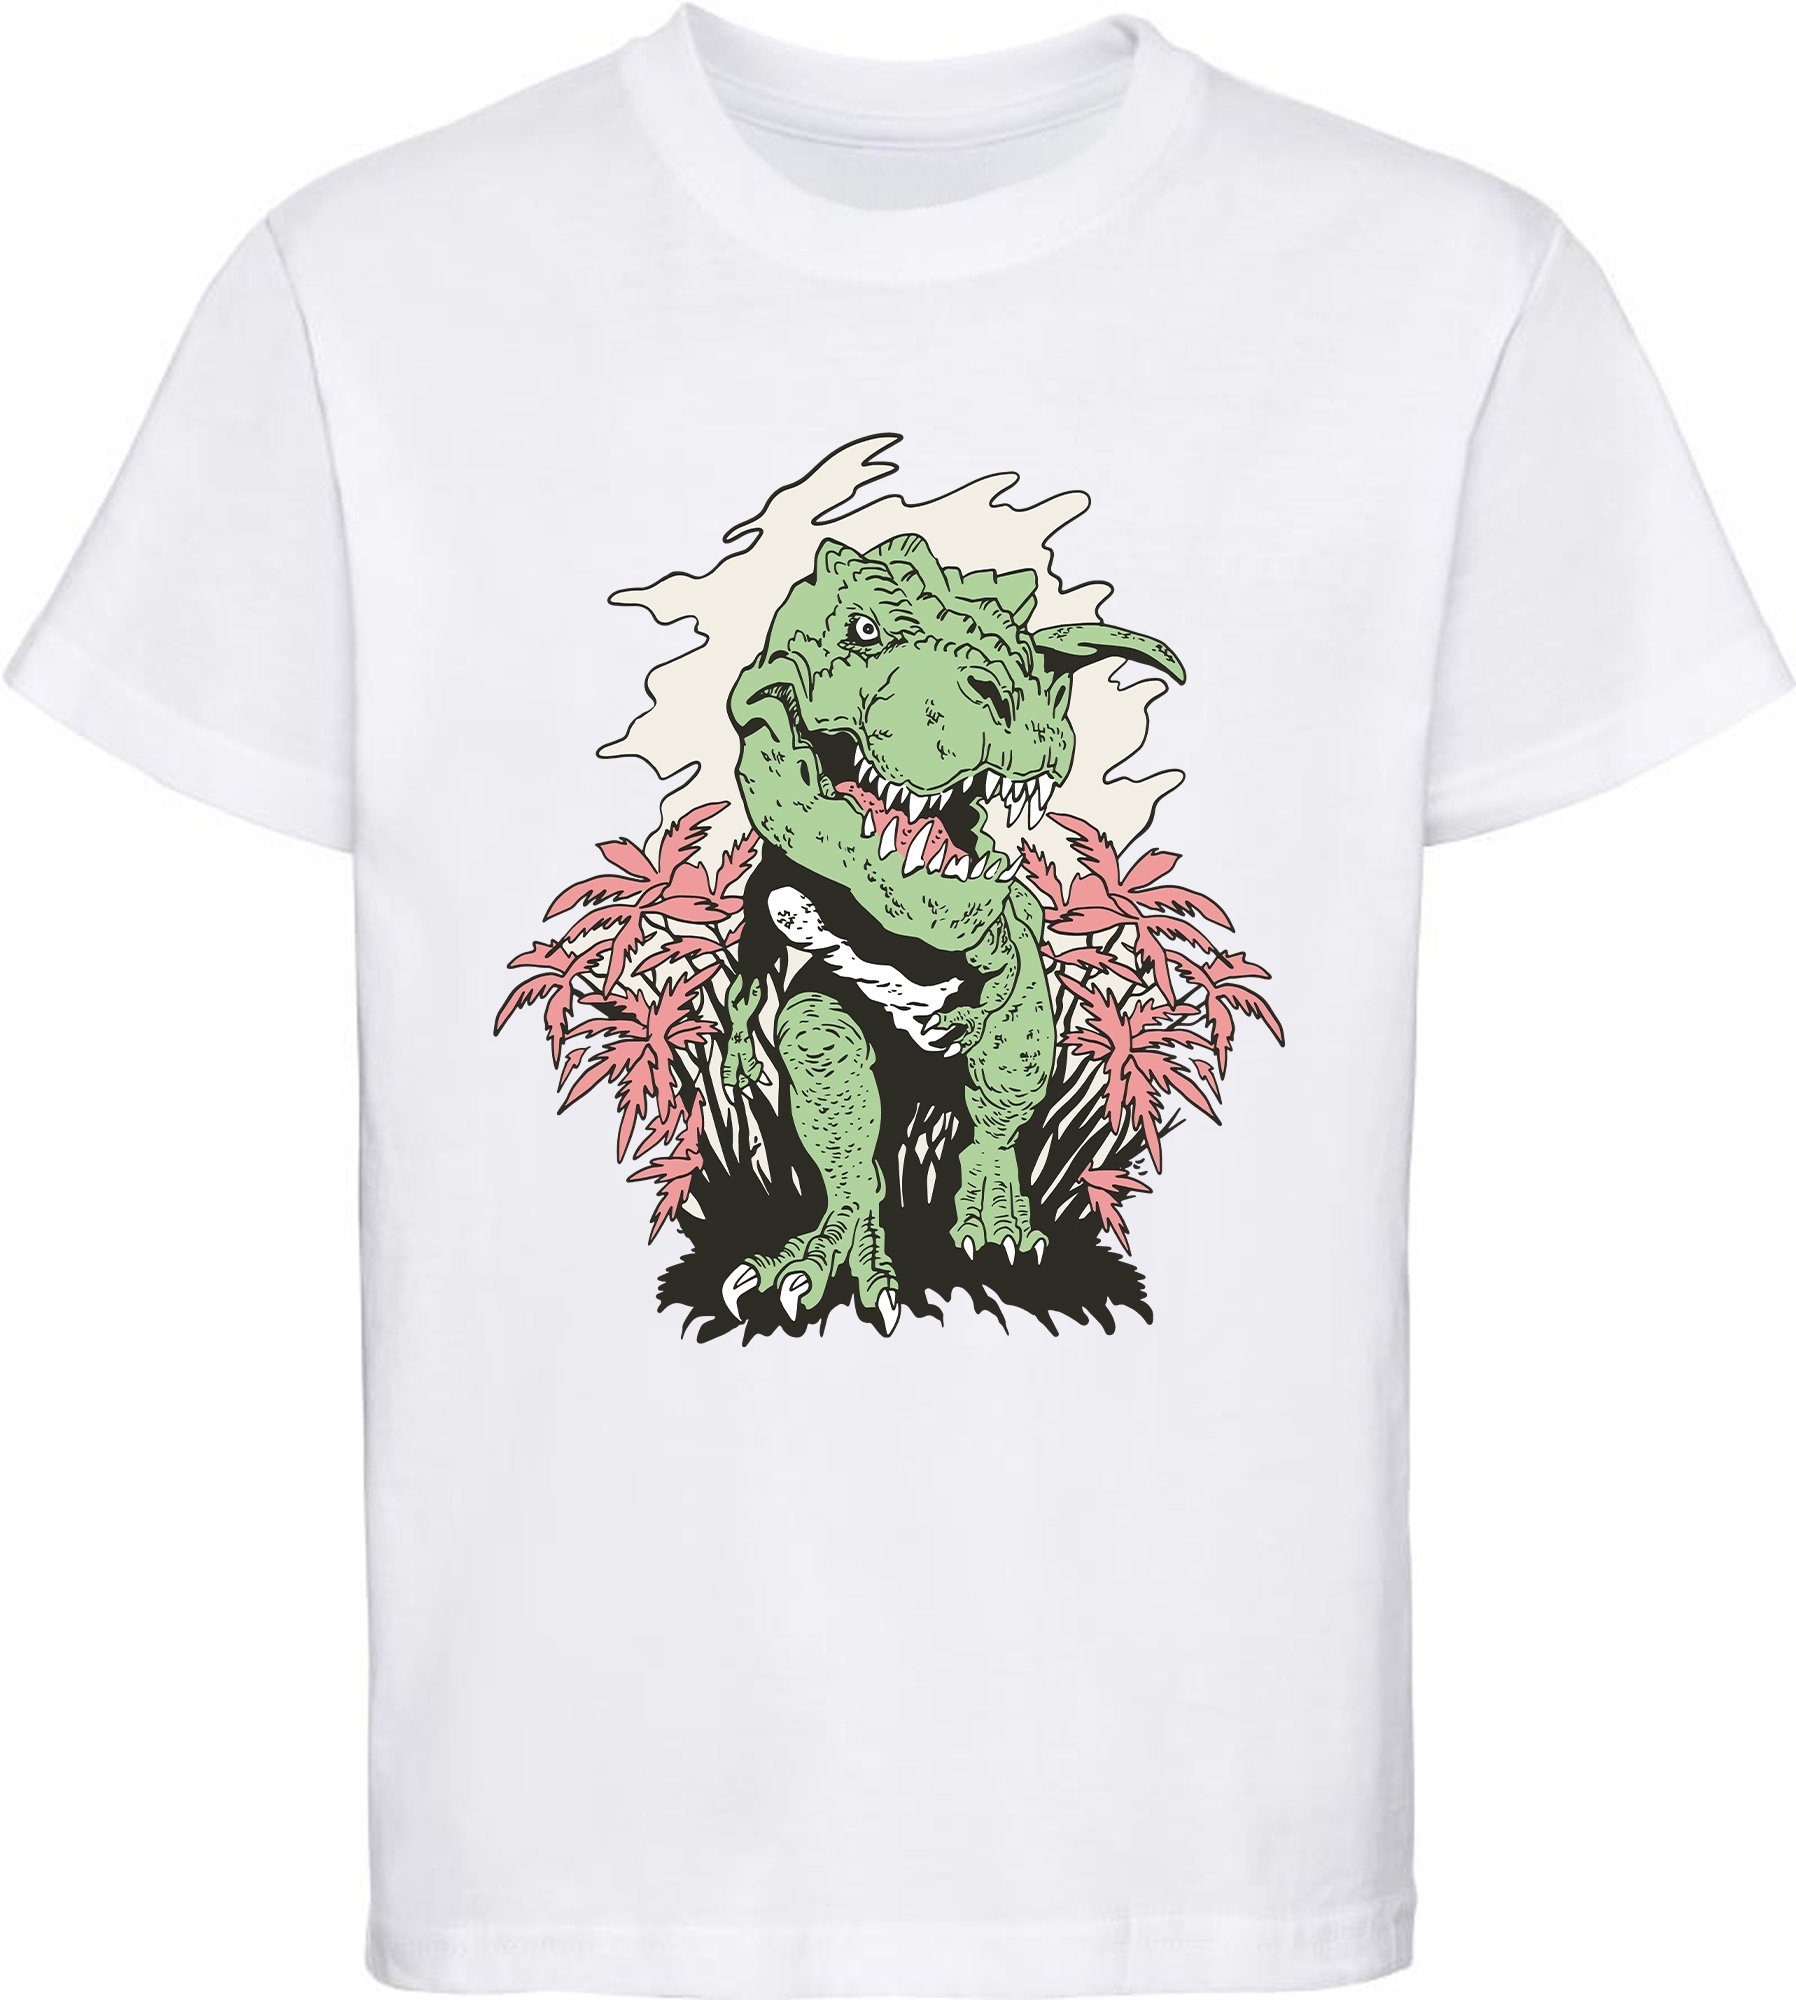 MyDesign24 Print-Shirt bedrucktes Kinder T-Shirt T-Rex der aus einem Busch kommt 100% Baumwolle mit Dino Aufdruck, schwarz, weiß, rot, blau, i101 weiss